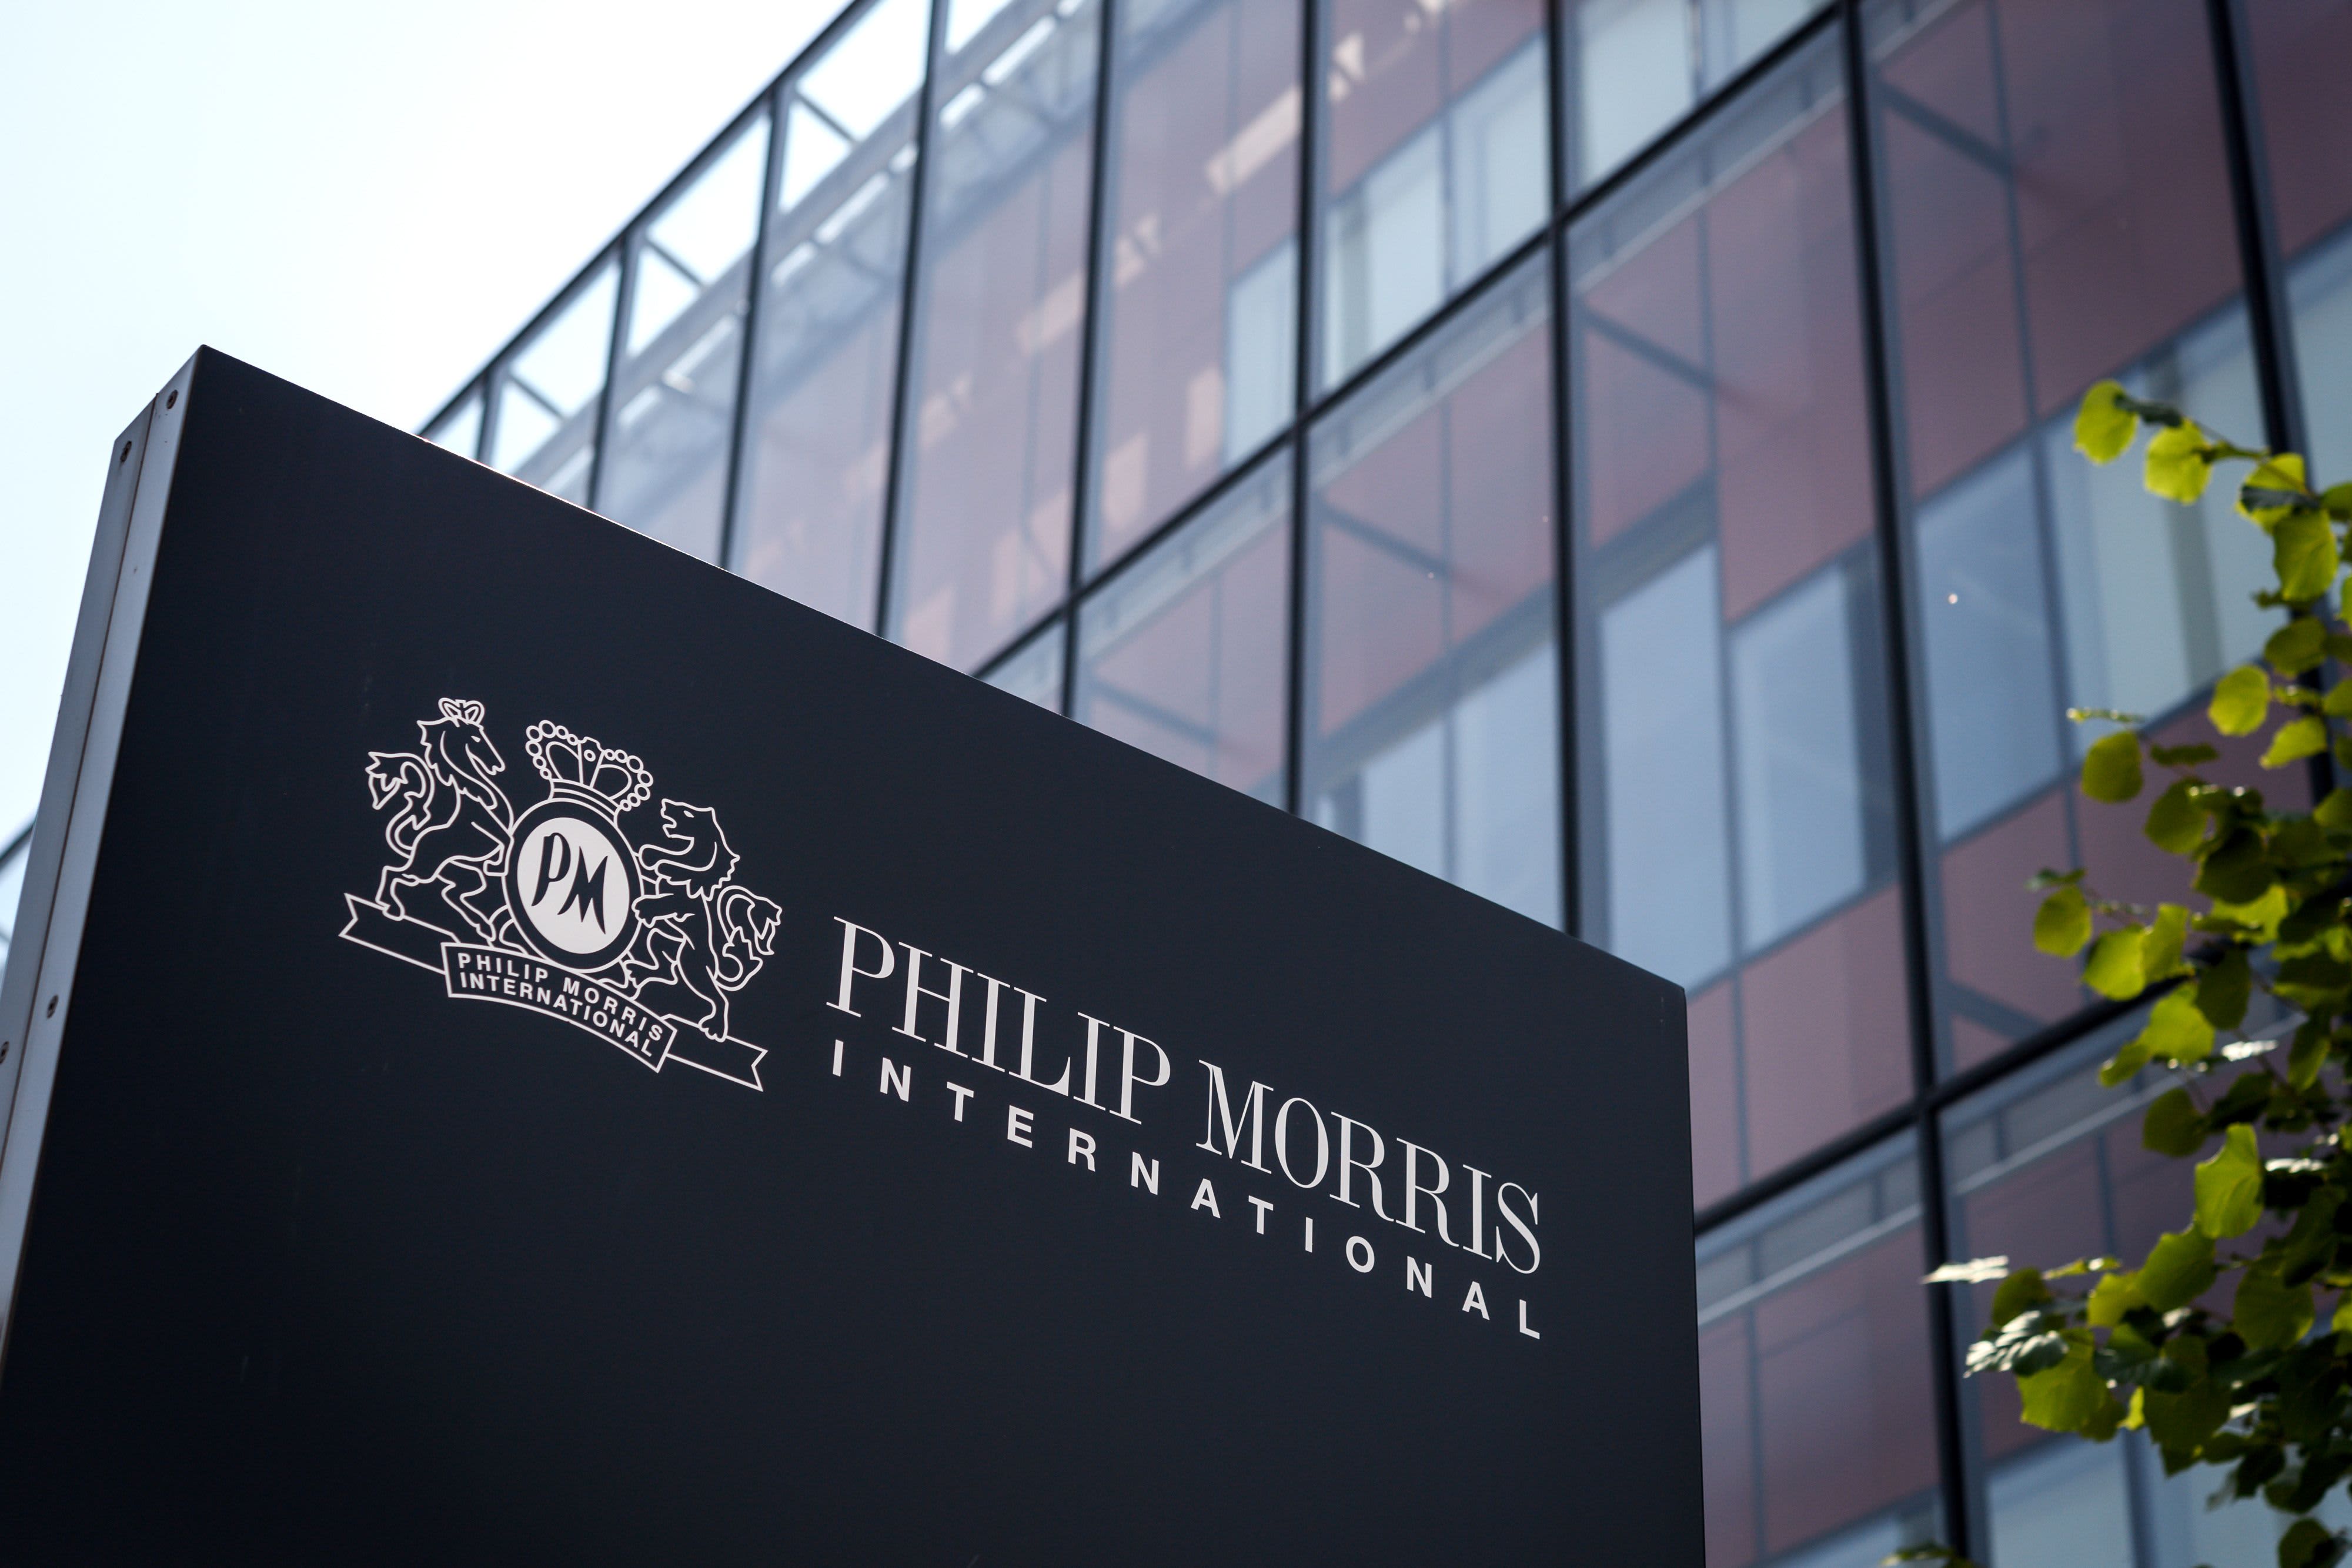 Goldman Sachs ធ្វើឱ្យប្រសើរឡើង Philip Morris ដោយលើកឡើងពីការពង្រីកនៅក្នុងសហរដ្ឋអាមេរិកជាមួយនឹងជម្រើសដែលគ្មានផ្សែង